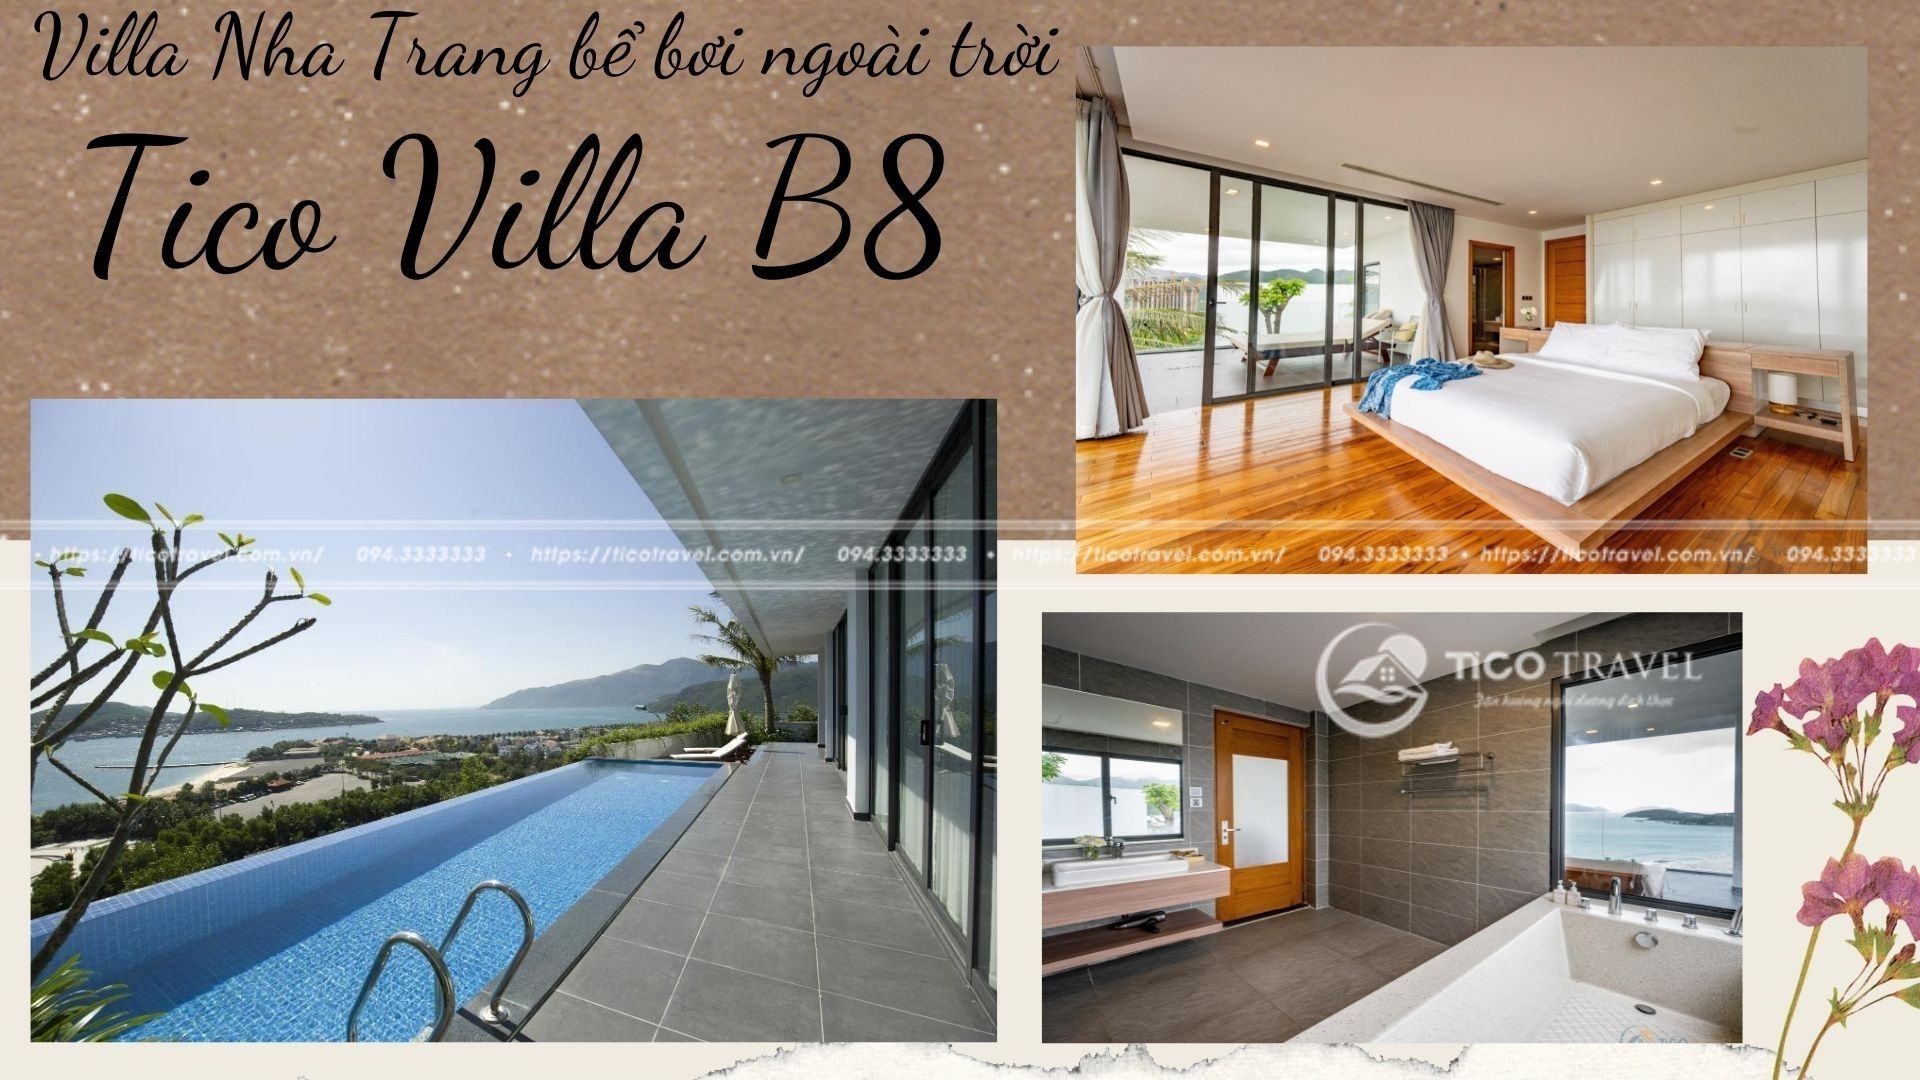 Top 20 Biệt thự Villa Nha Trang gần biển đẹp nhất giá rẻ